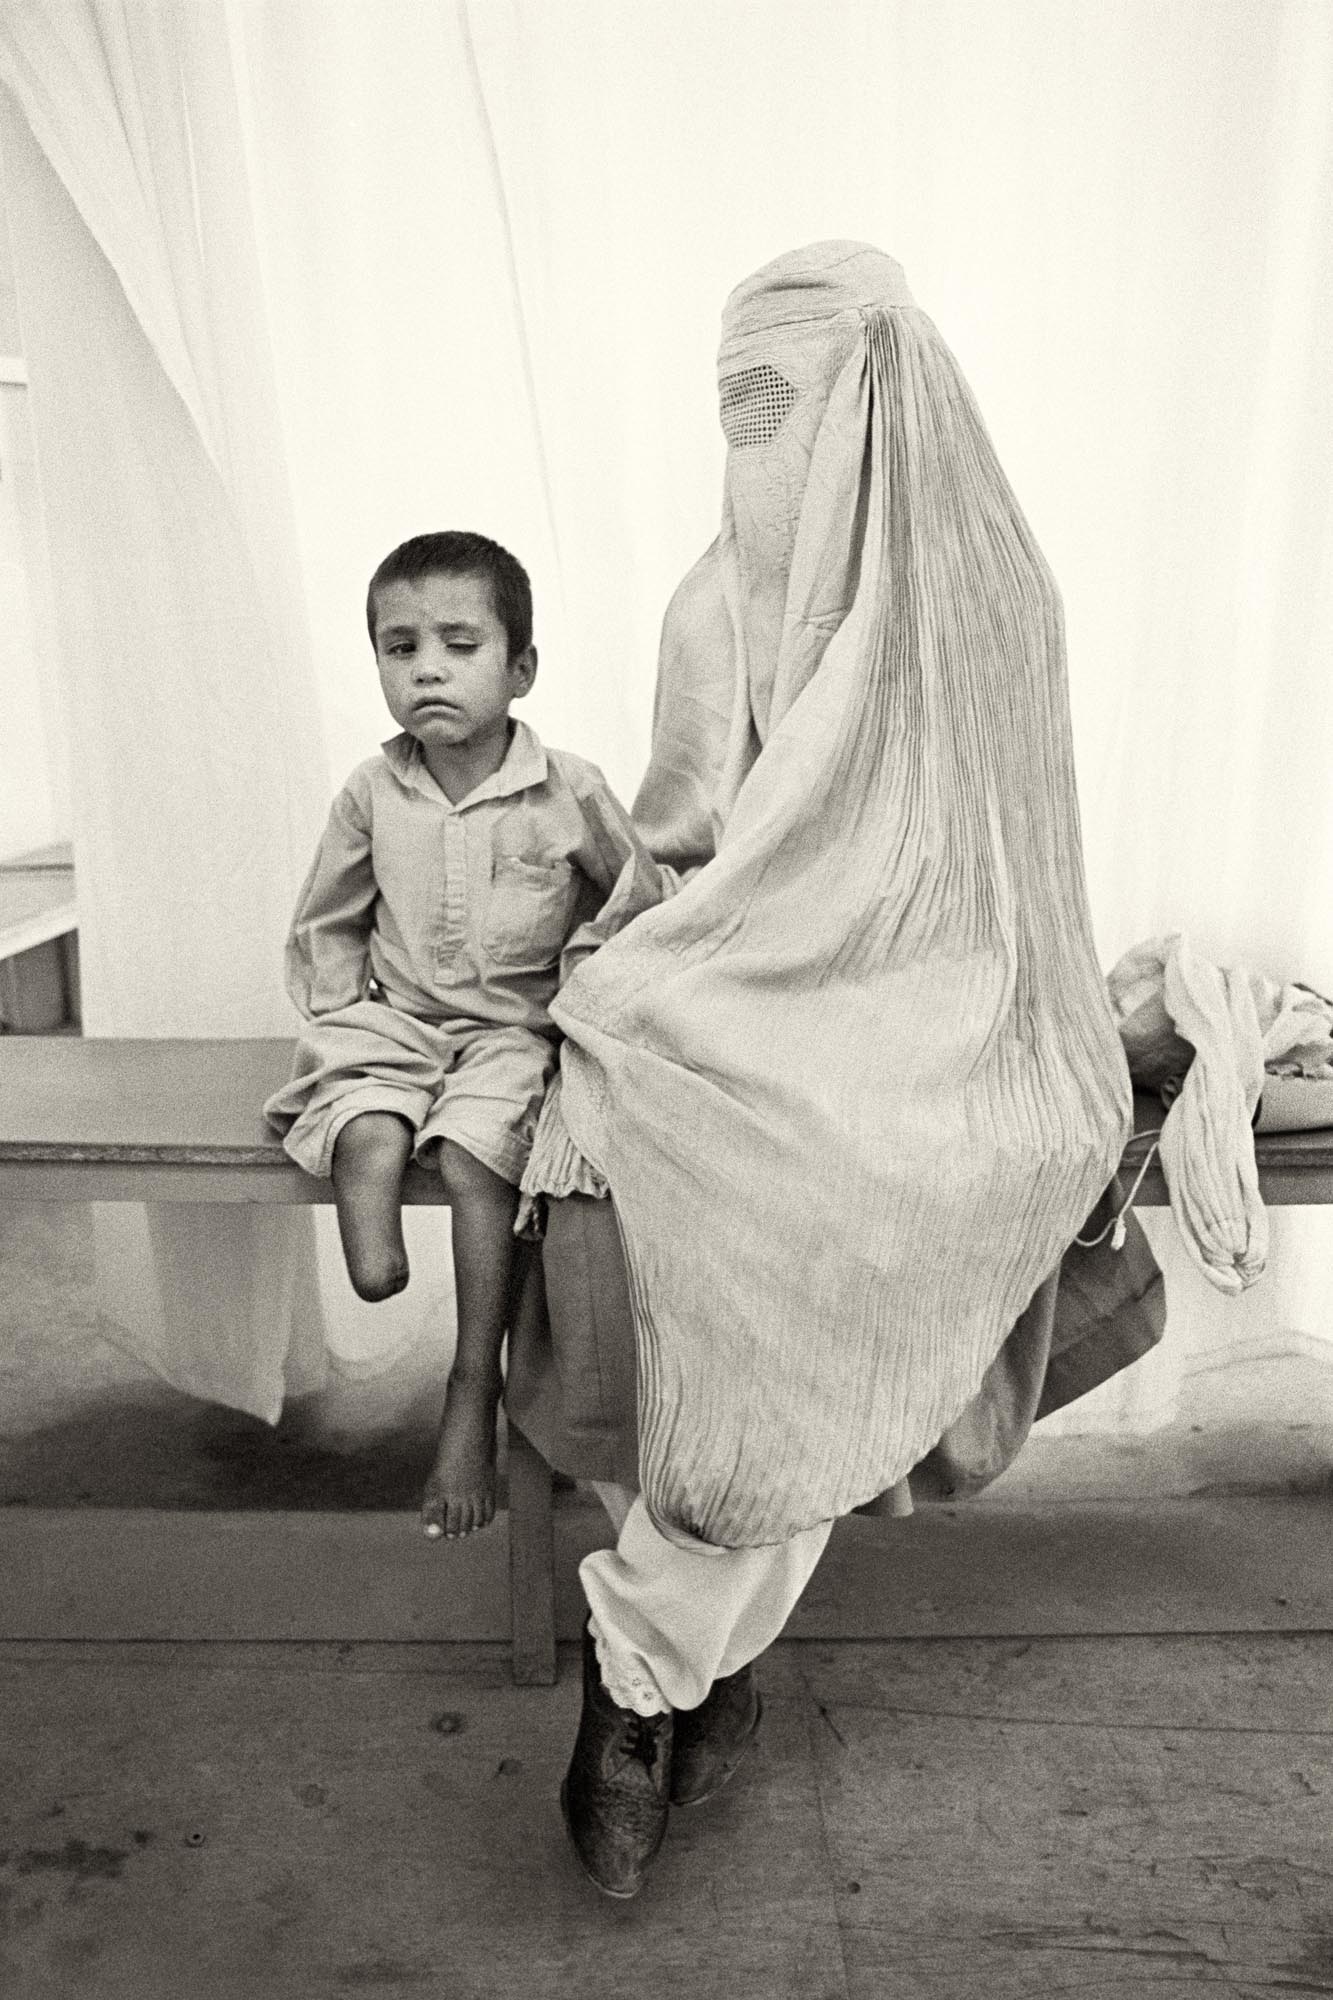 Sarwar, de seis años, perdió la pierna y un ojo en una explosión de una mina. Le acompaña su madre cubierta por la burka. Kabul (Afganistán), agosto de 1996.